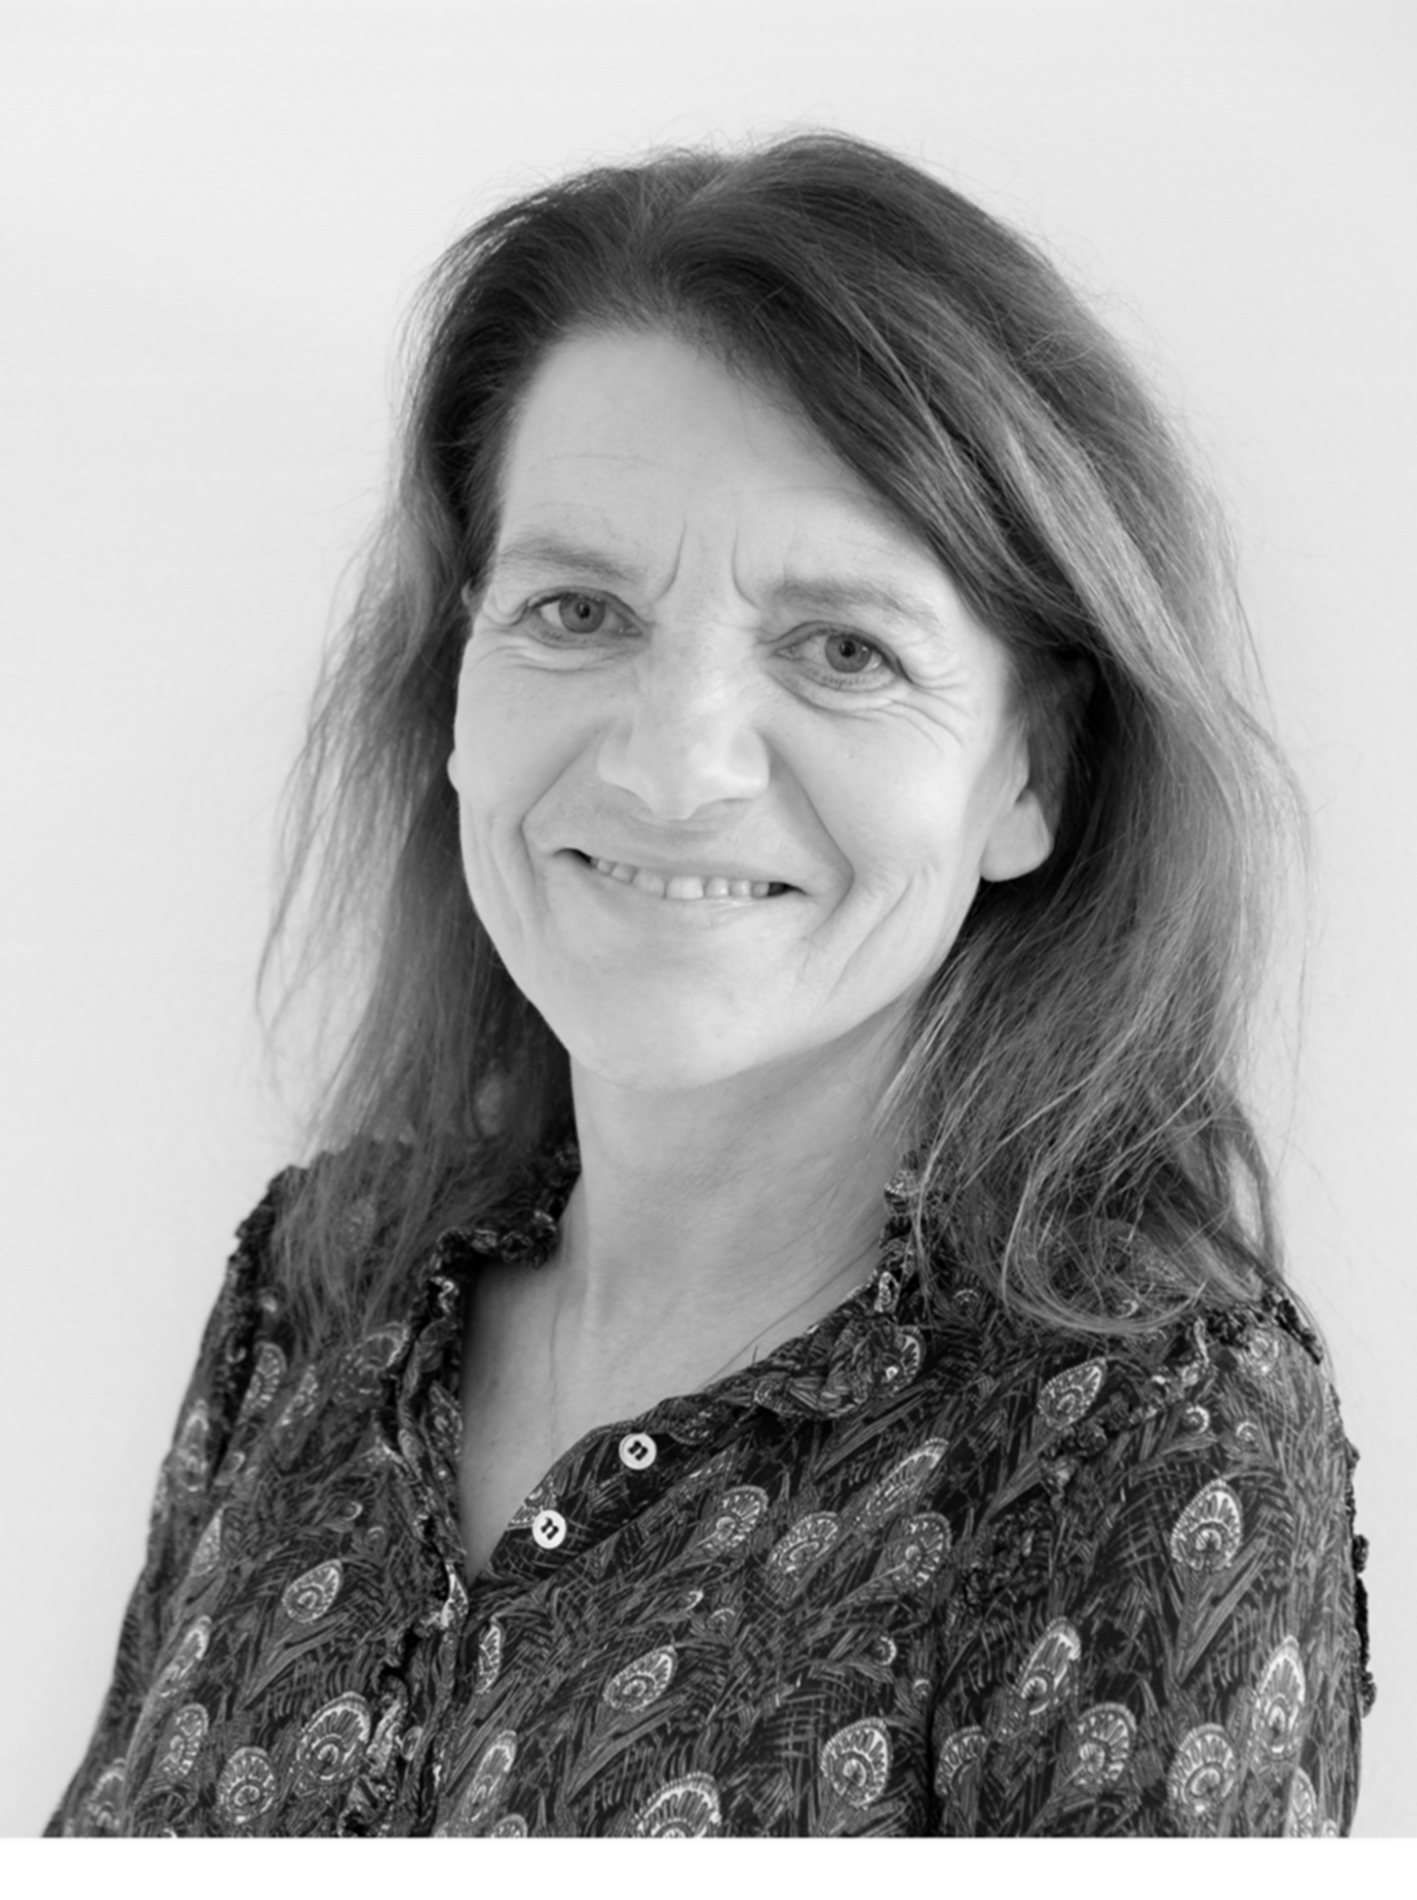 Fondssekretær Anne Christine Helms. Medarbejder på Christian Nielsens fond